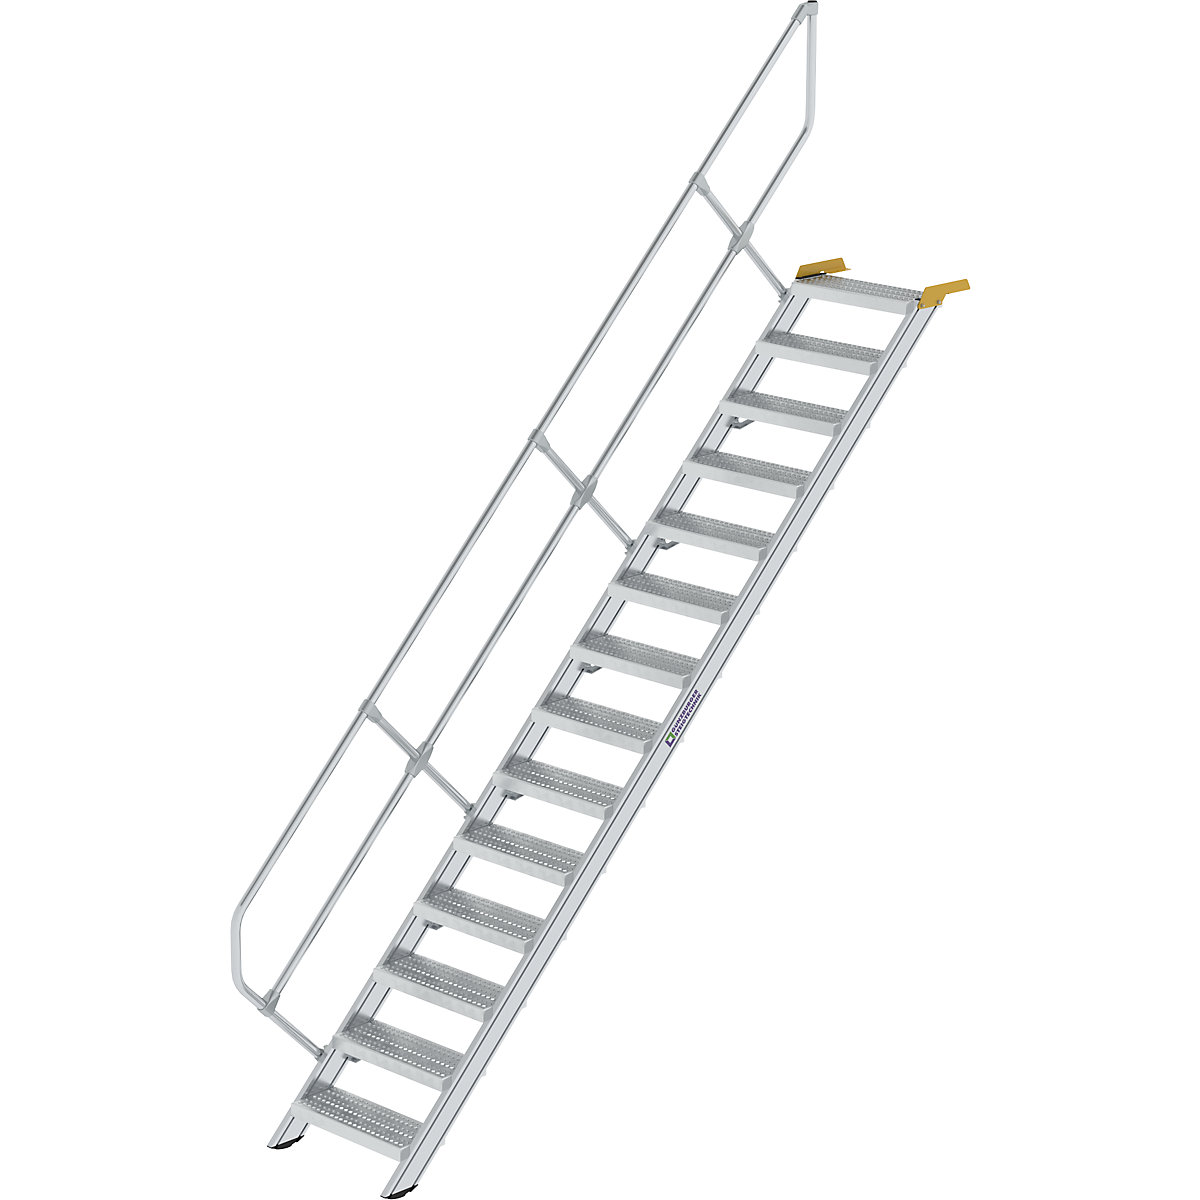 Ipari lépcső – MUNK, perforált lemezes acélfokok, lépcsőfokok szélessége 600 mm, 14 lépcsőfok-6